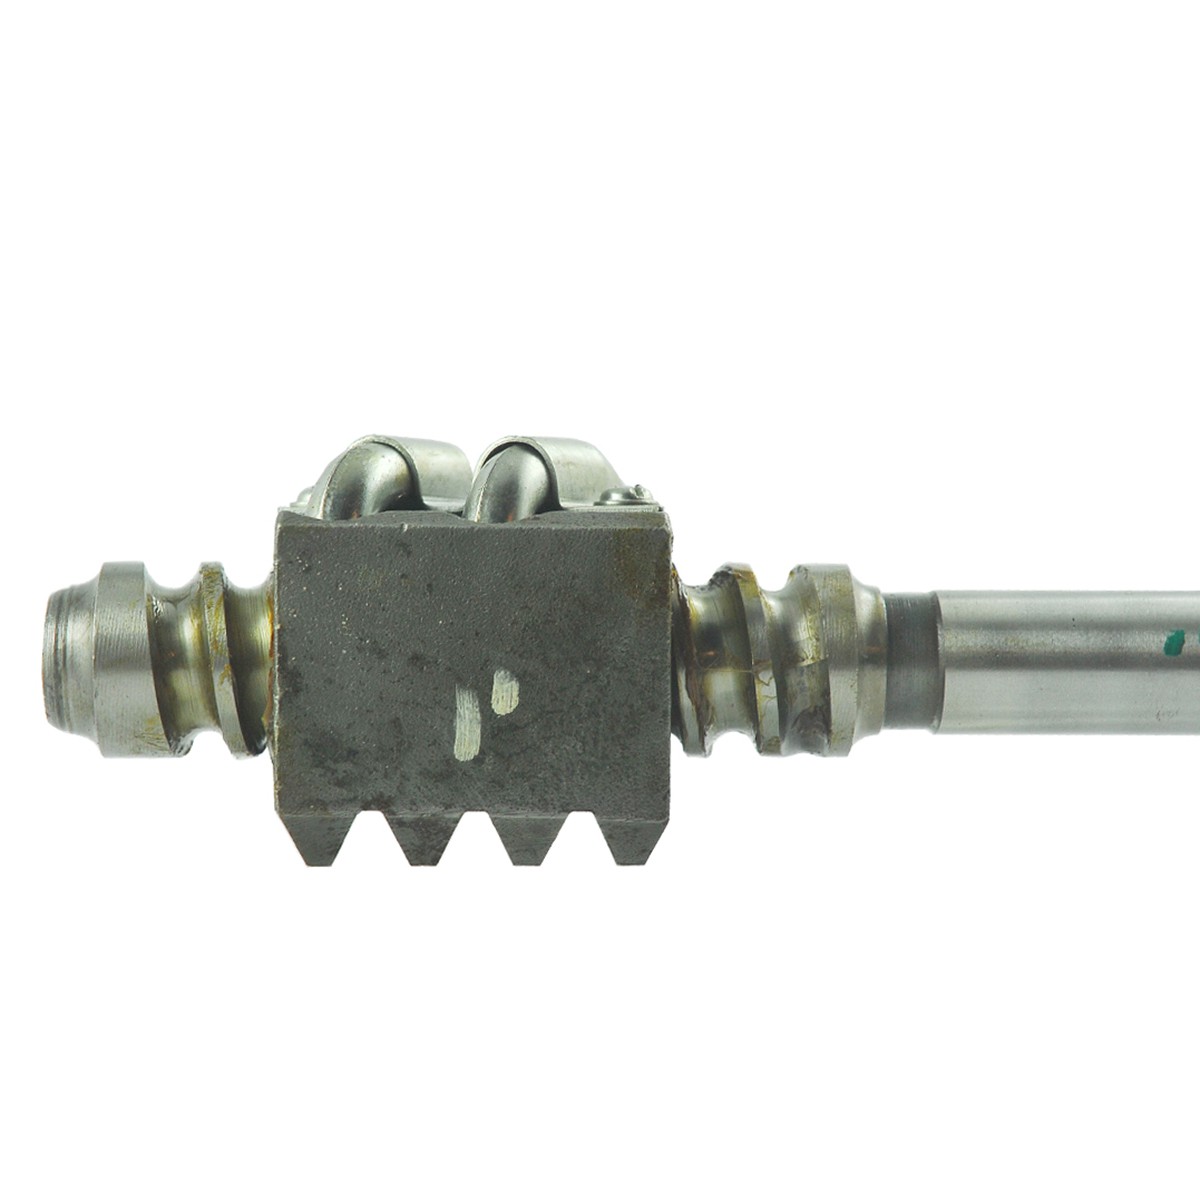 Steering column shaft 18 x 607 mm / Kubota L2600/L3000DT / TC020-43682